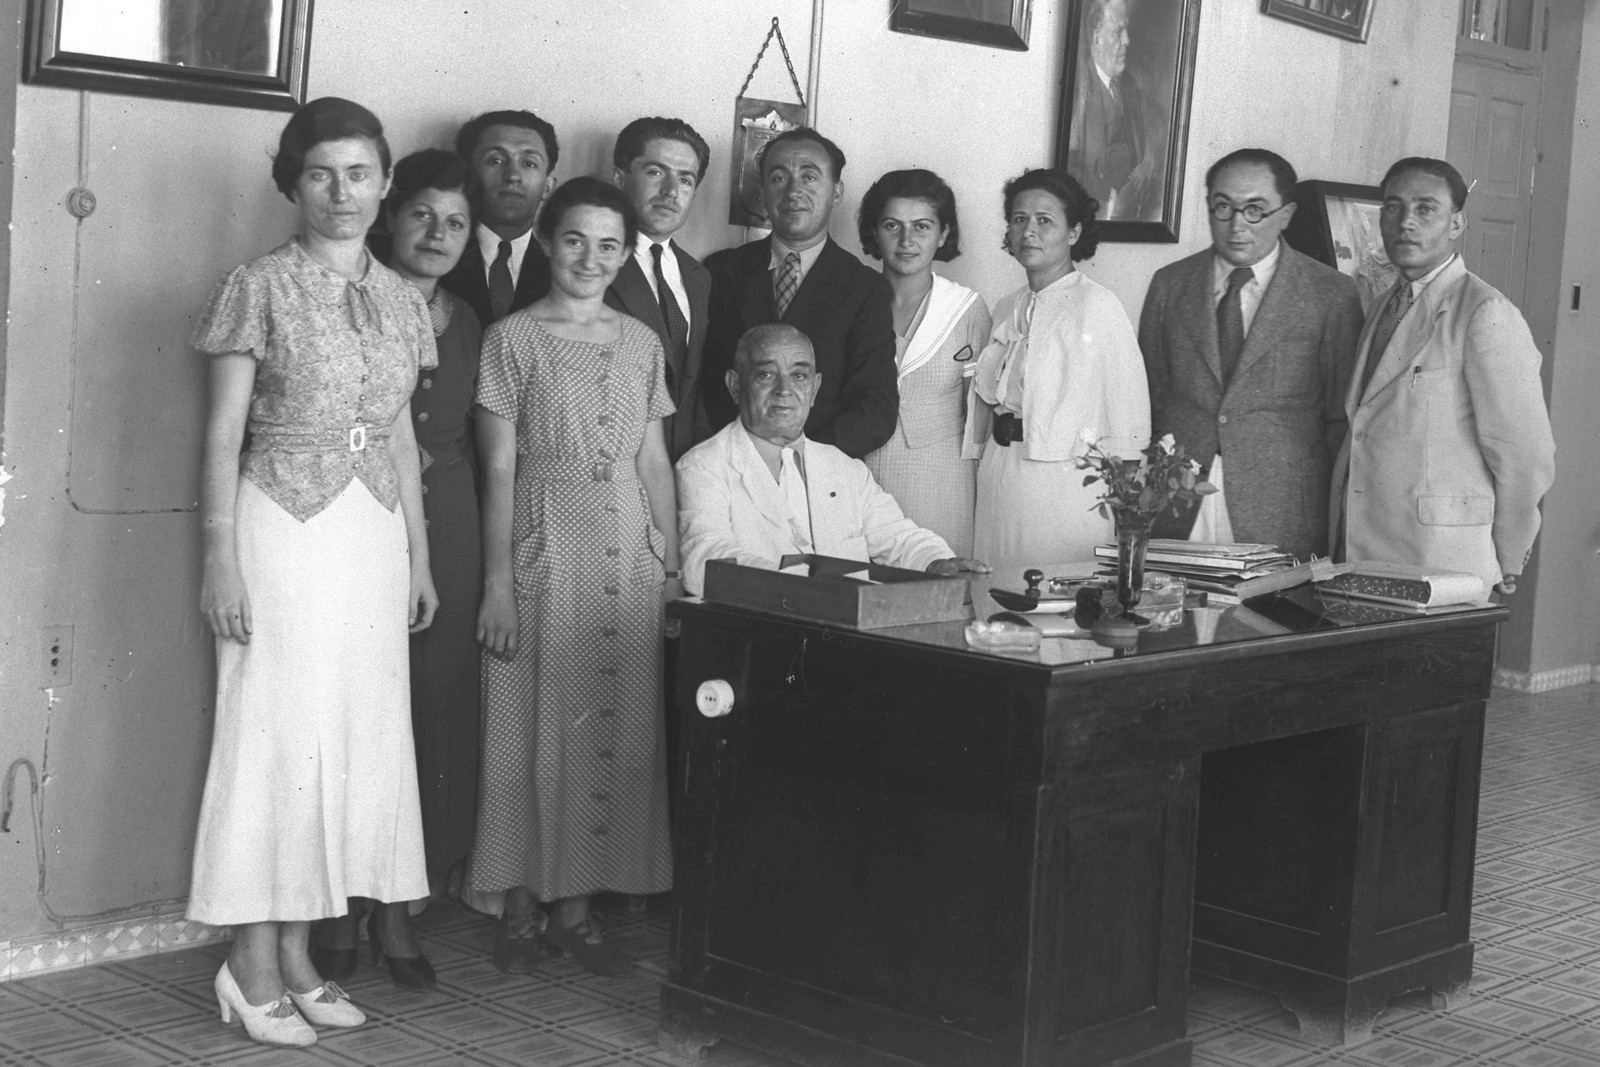 1934. Мэр Тель-Авива Меир Дизенгоф сфотографирован в своем офисе с муниципальными служащими.